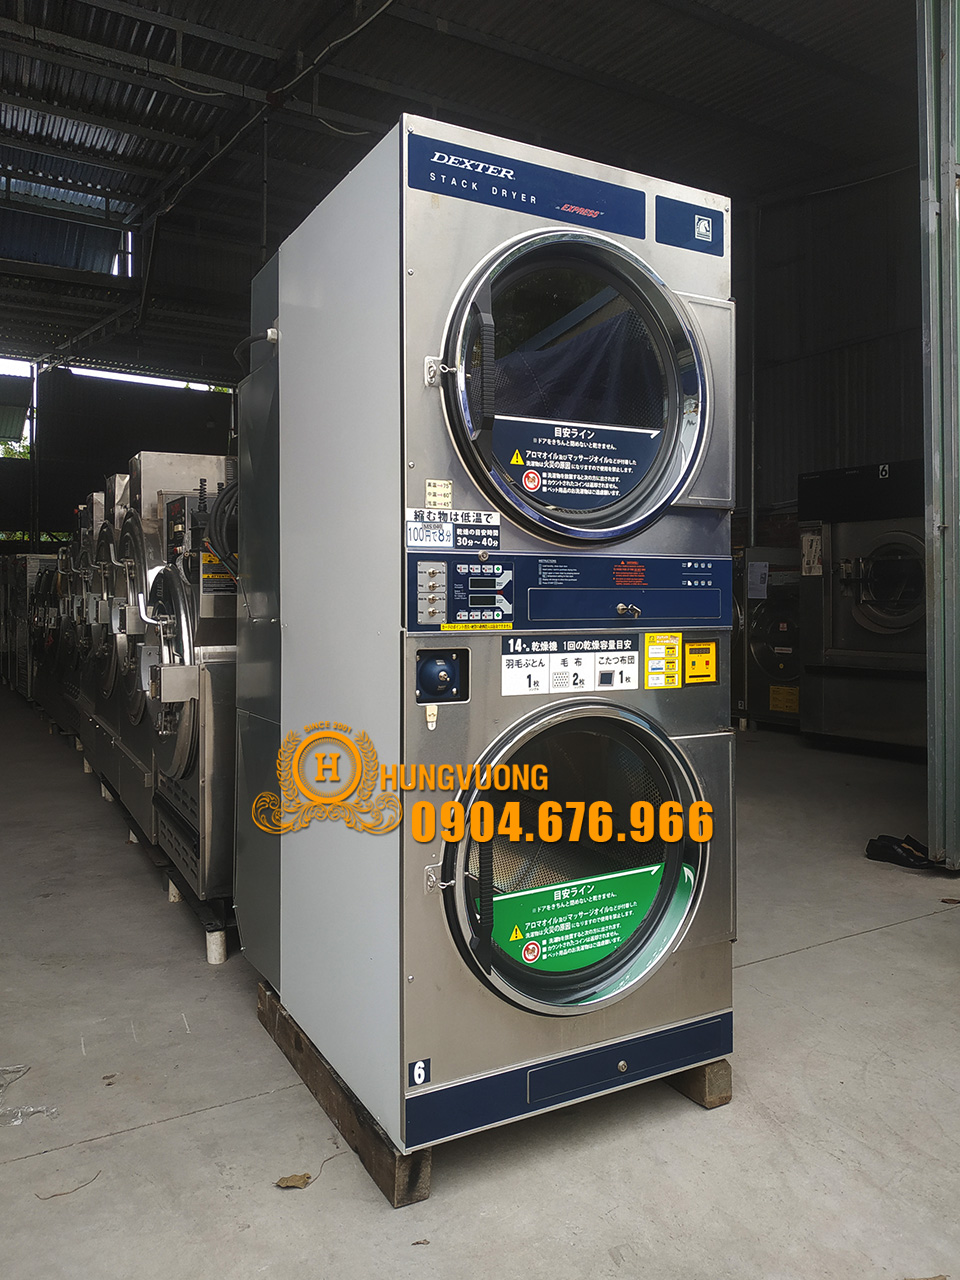 Mặt nghiêng máy sấy công nghiệp DEXTER T-30X2, 2x14kg, 2 tầng, đảo chiều, Mỹ